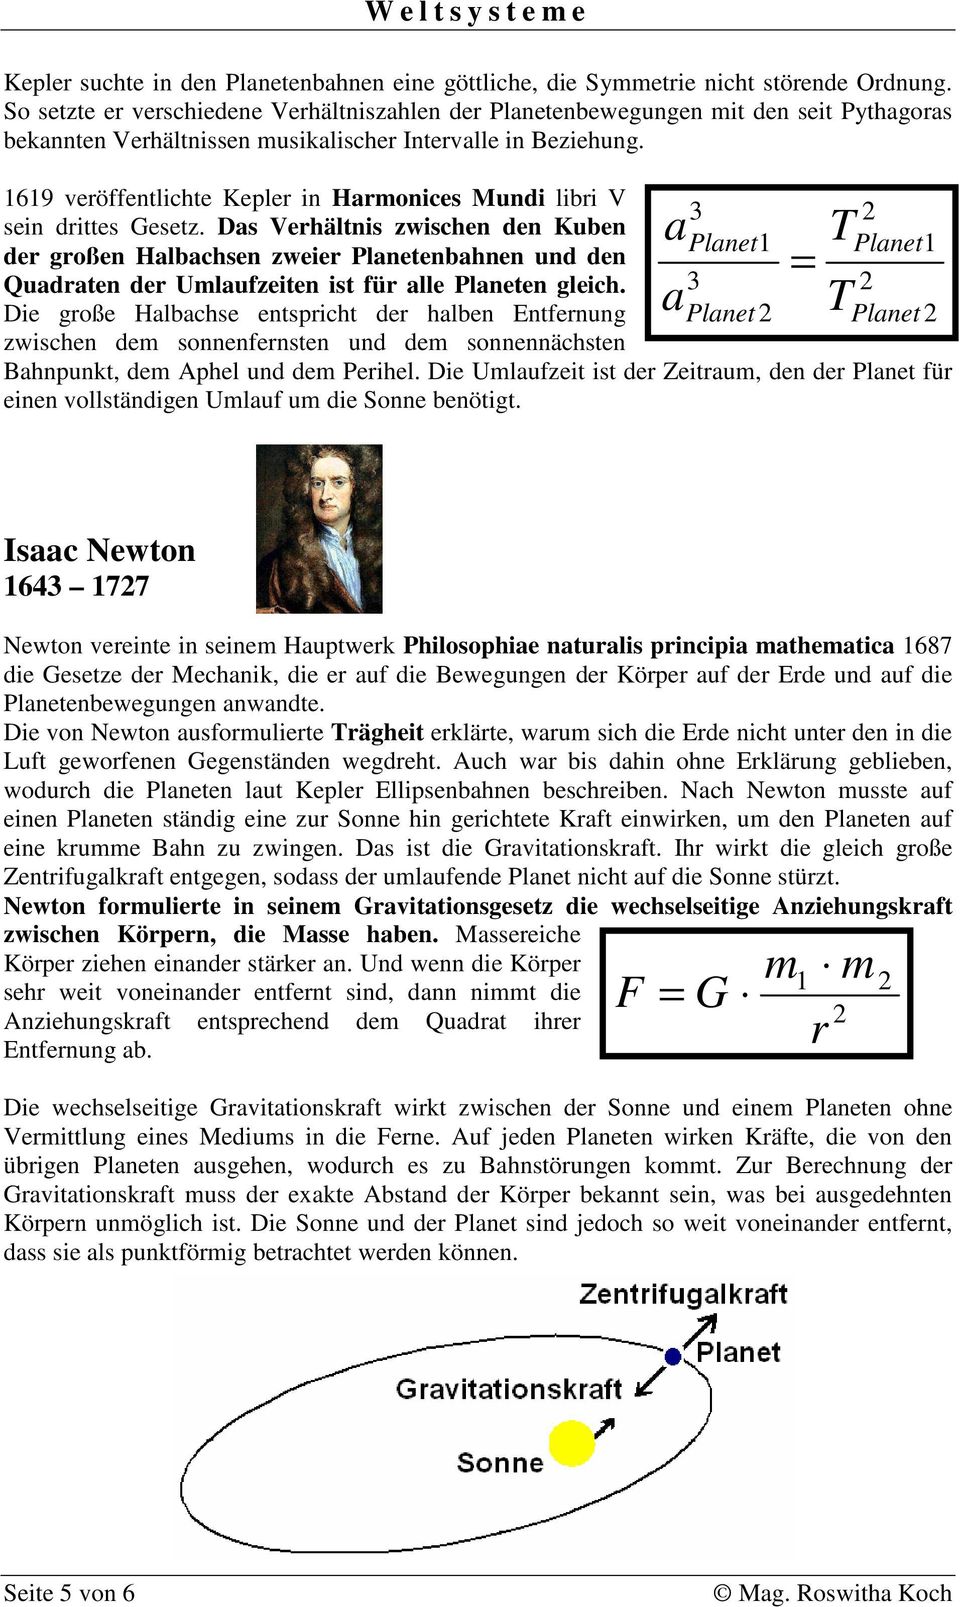 1619 veröffentlichte Kepler in Harmonices Mundi libri V 3 sein drittes Gesetz.